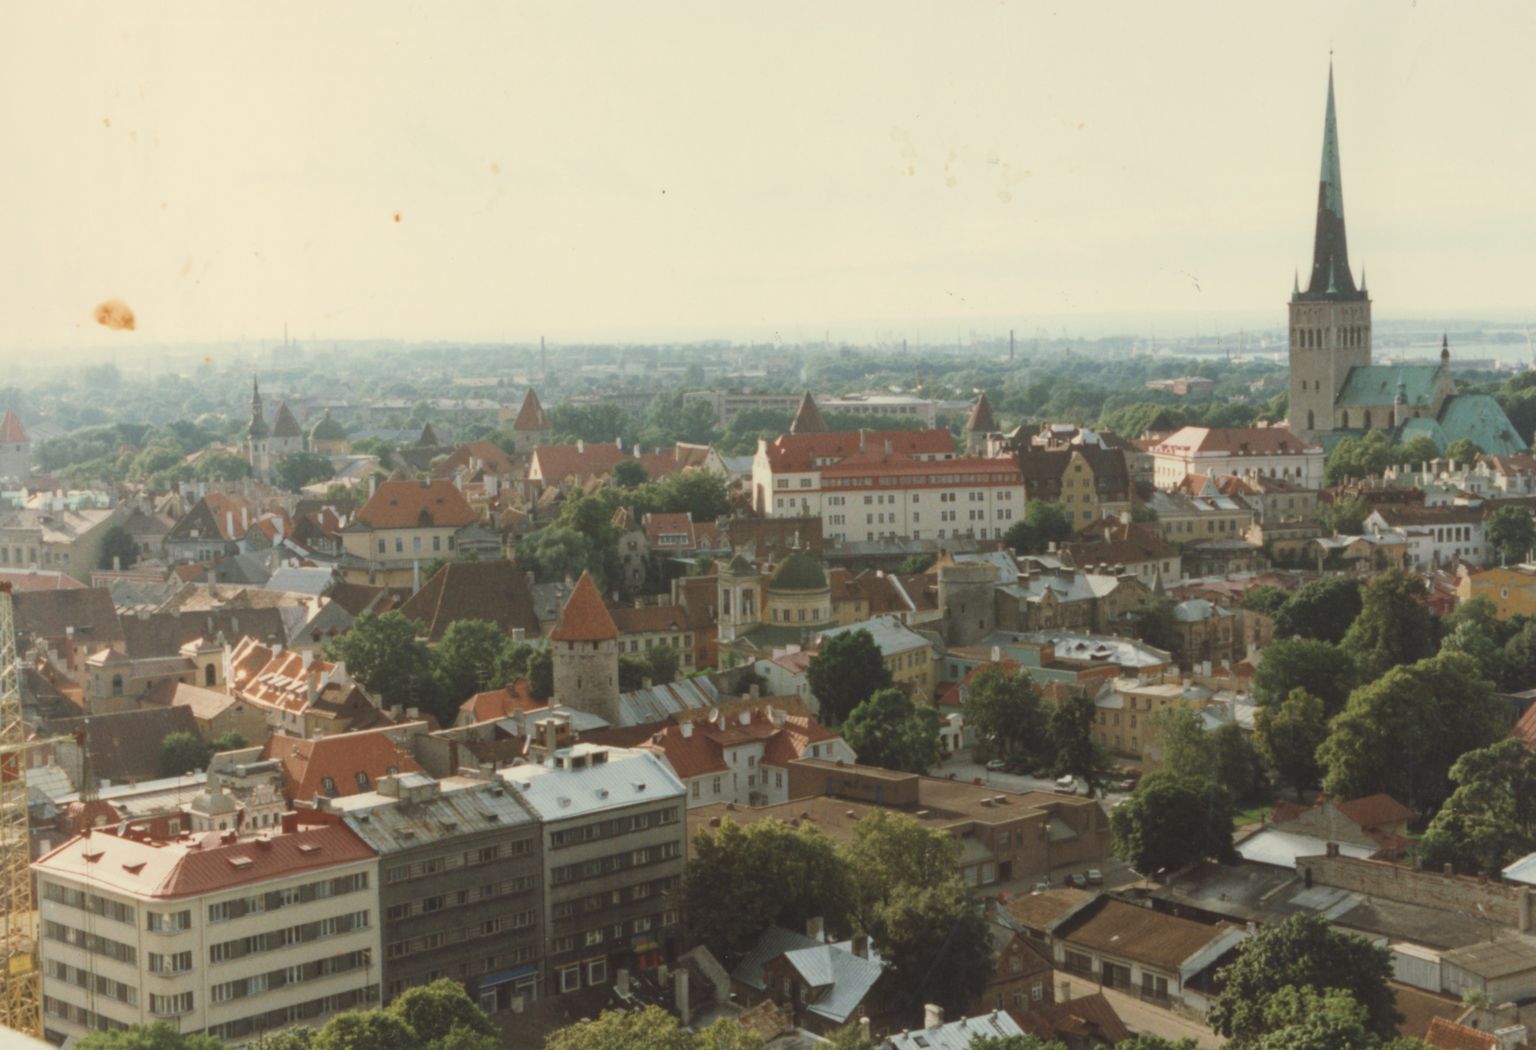 Tallinn, 90ndad. Pilt on illustreeriv.